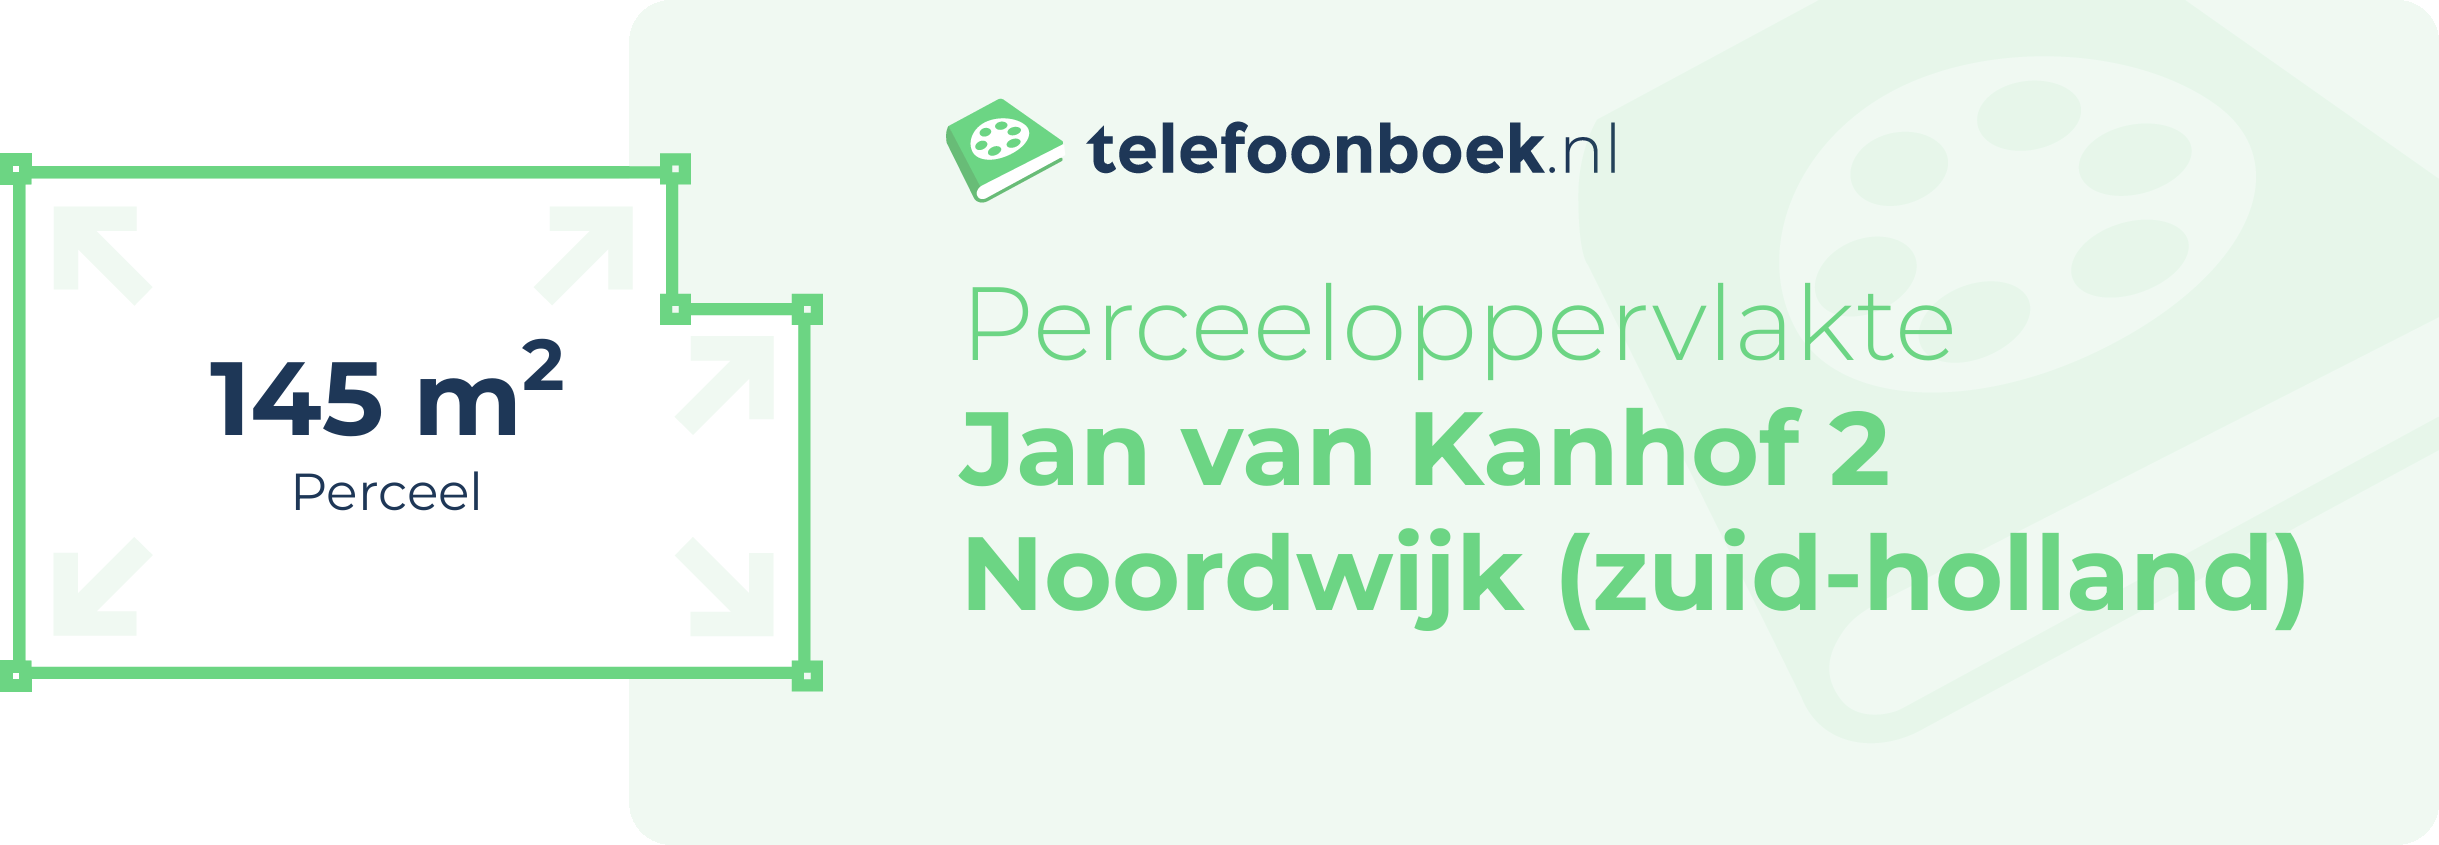 Perceeloppervlakte Jan Van Kanhof 2 Noordwijk (Zuid-Holland)